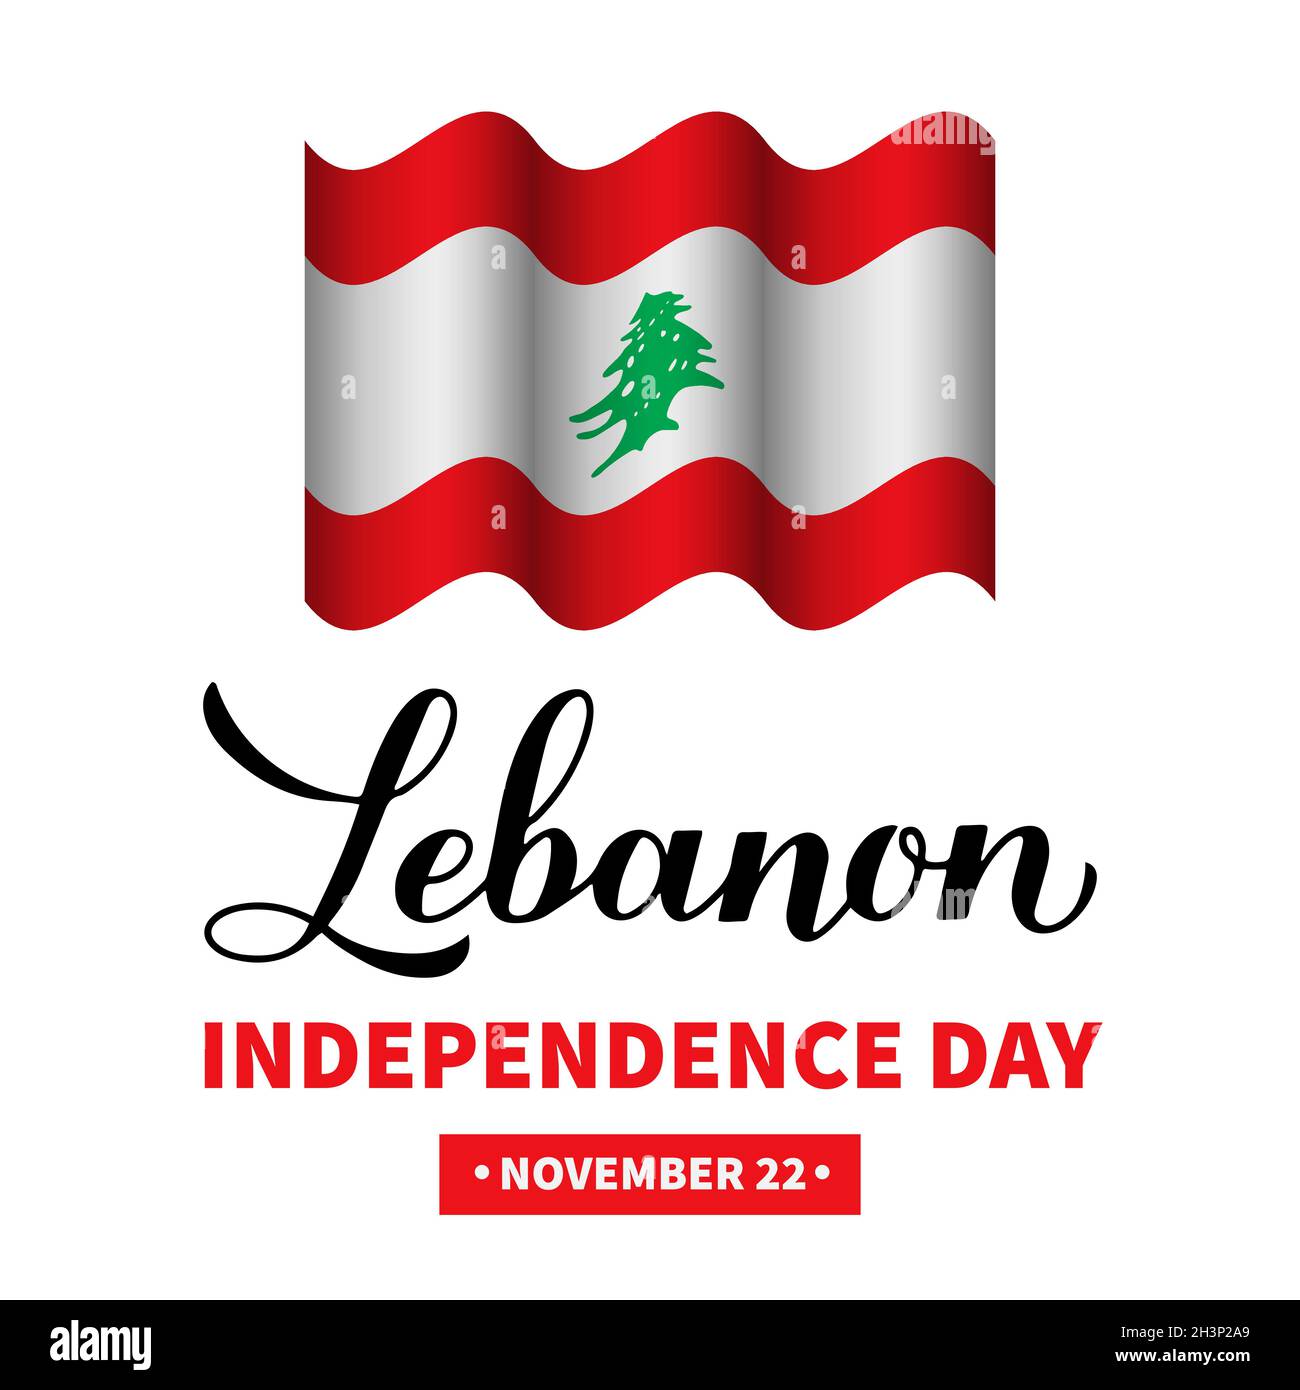 Affiche typographique de la Journée de l'indépendance du Liban.Fête libanaise le 22 novembre.Modèle vectoriel pour bannière, prospectus, cartes de vœux, etc Illustration de Vecteur